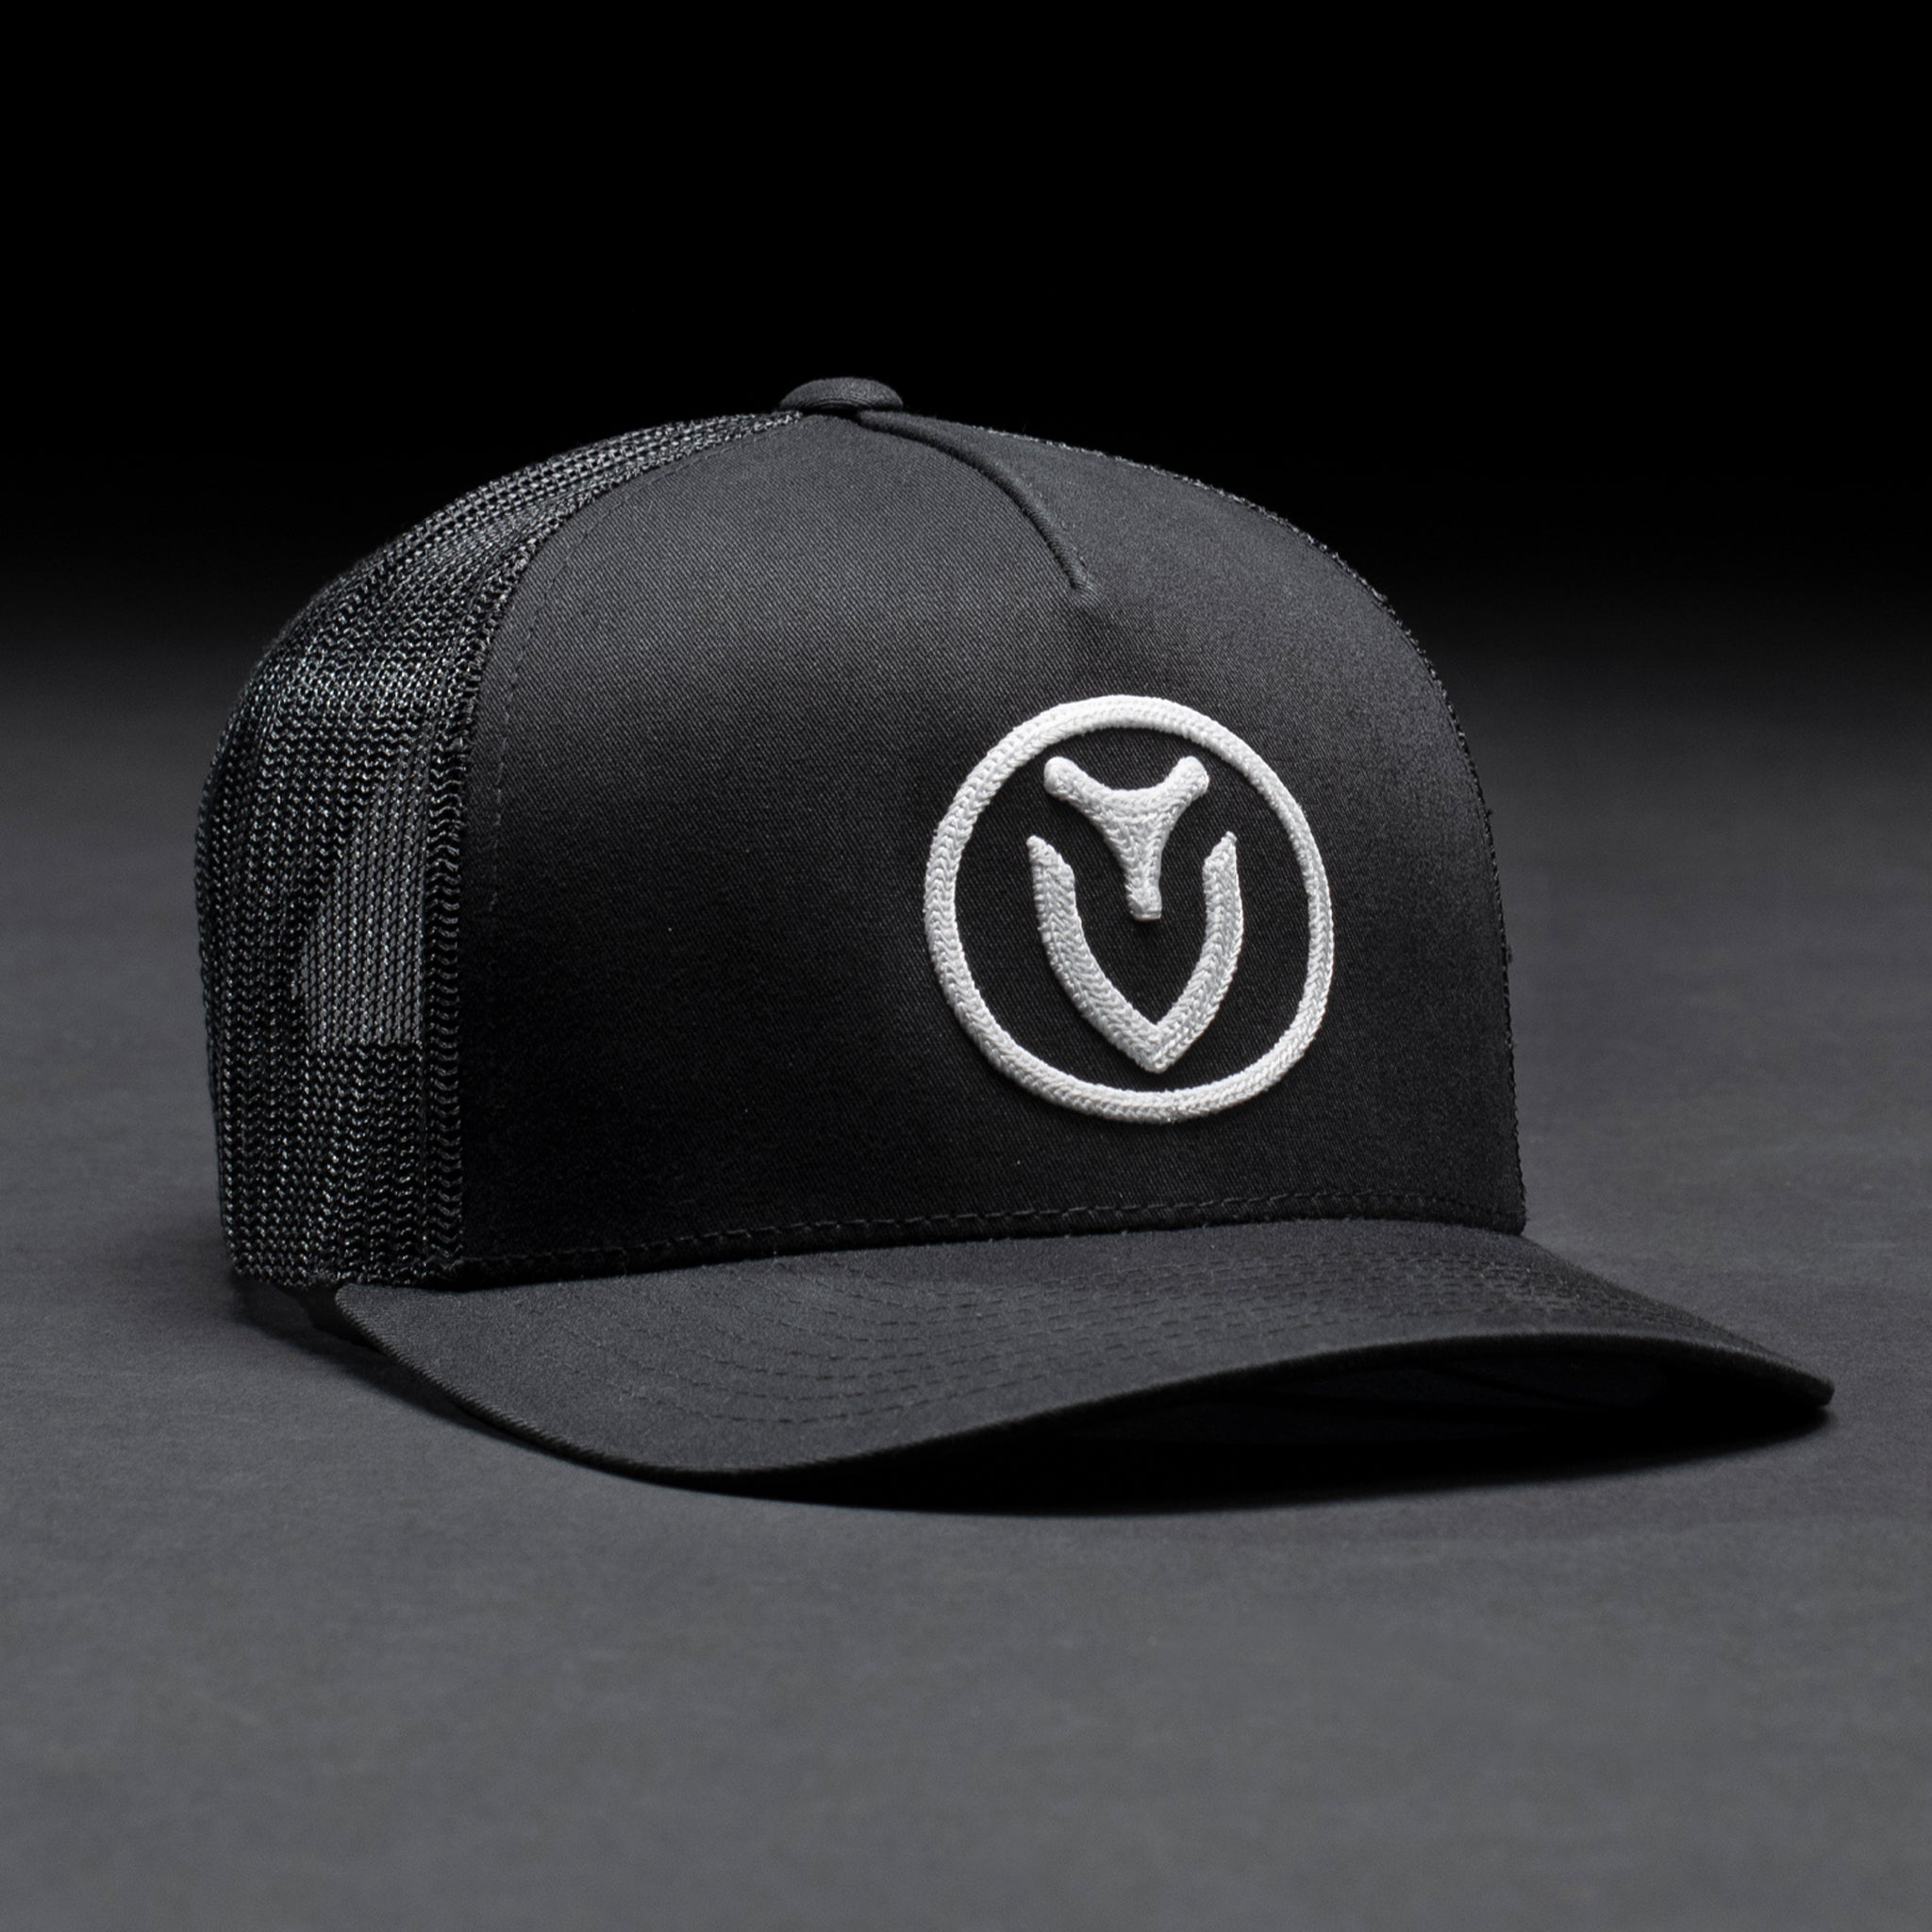 A black VESSEL trucker hat in a black studio